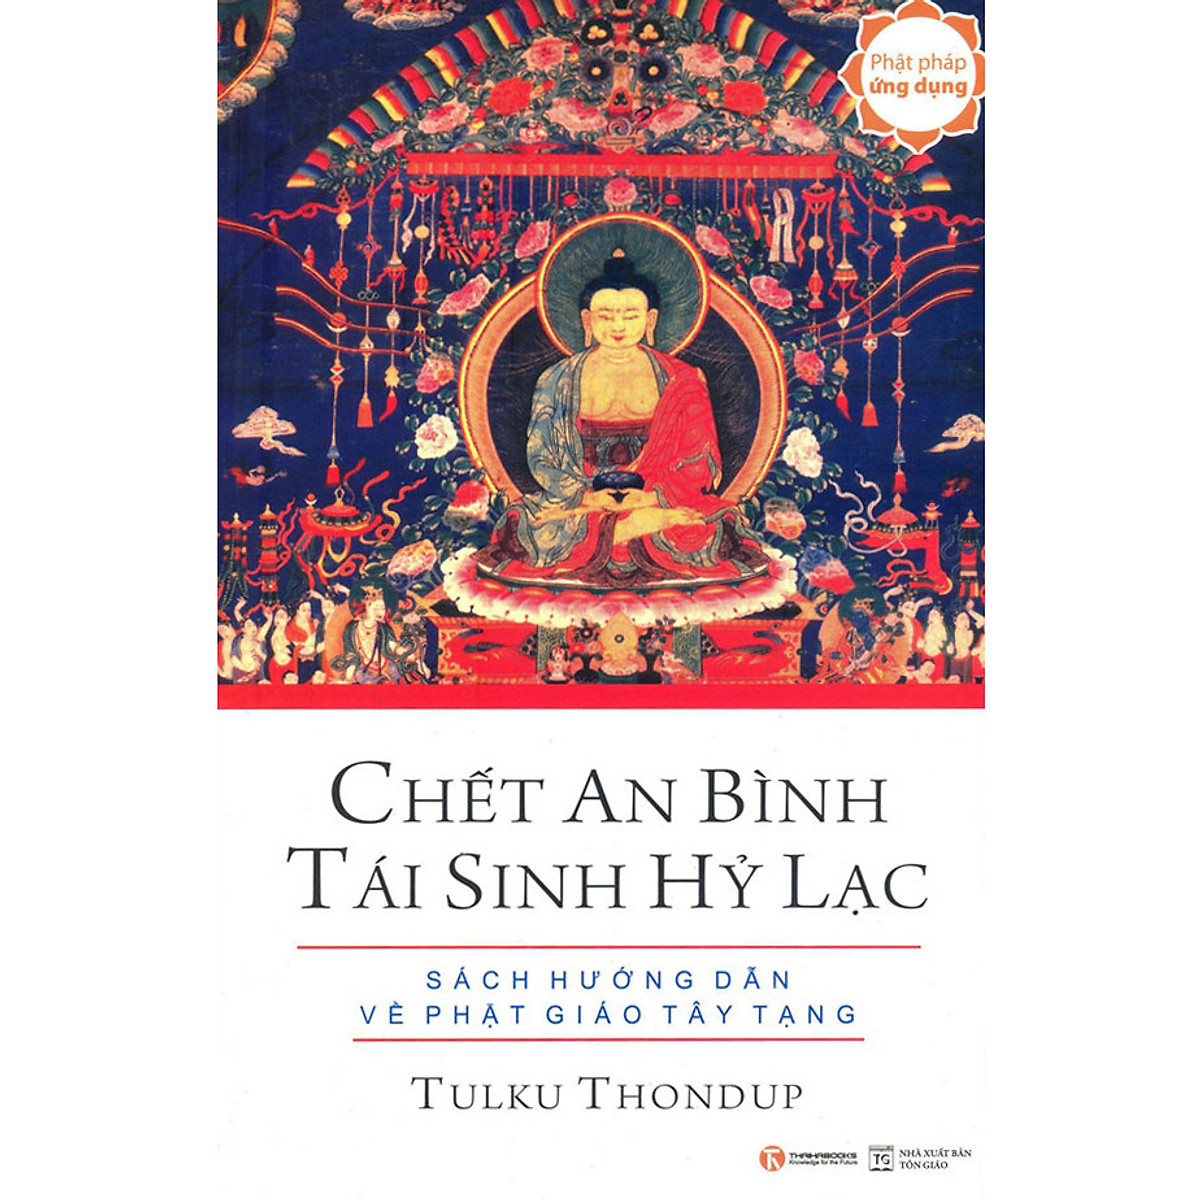 Hình ảnh Chết An Bình Tái Sinh Hỷ Lạc - Sách Hướng dẫn về Phật giáo Tây Tạng